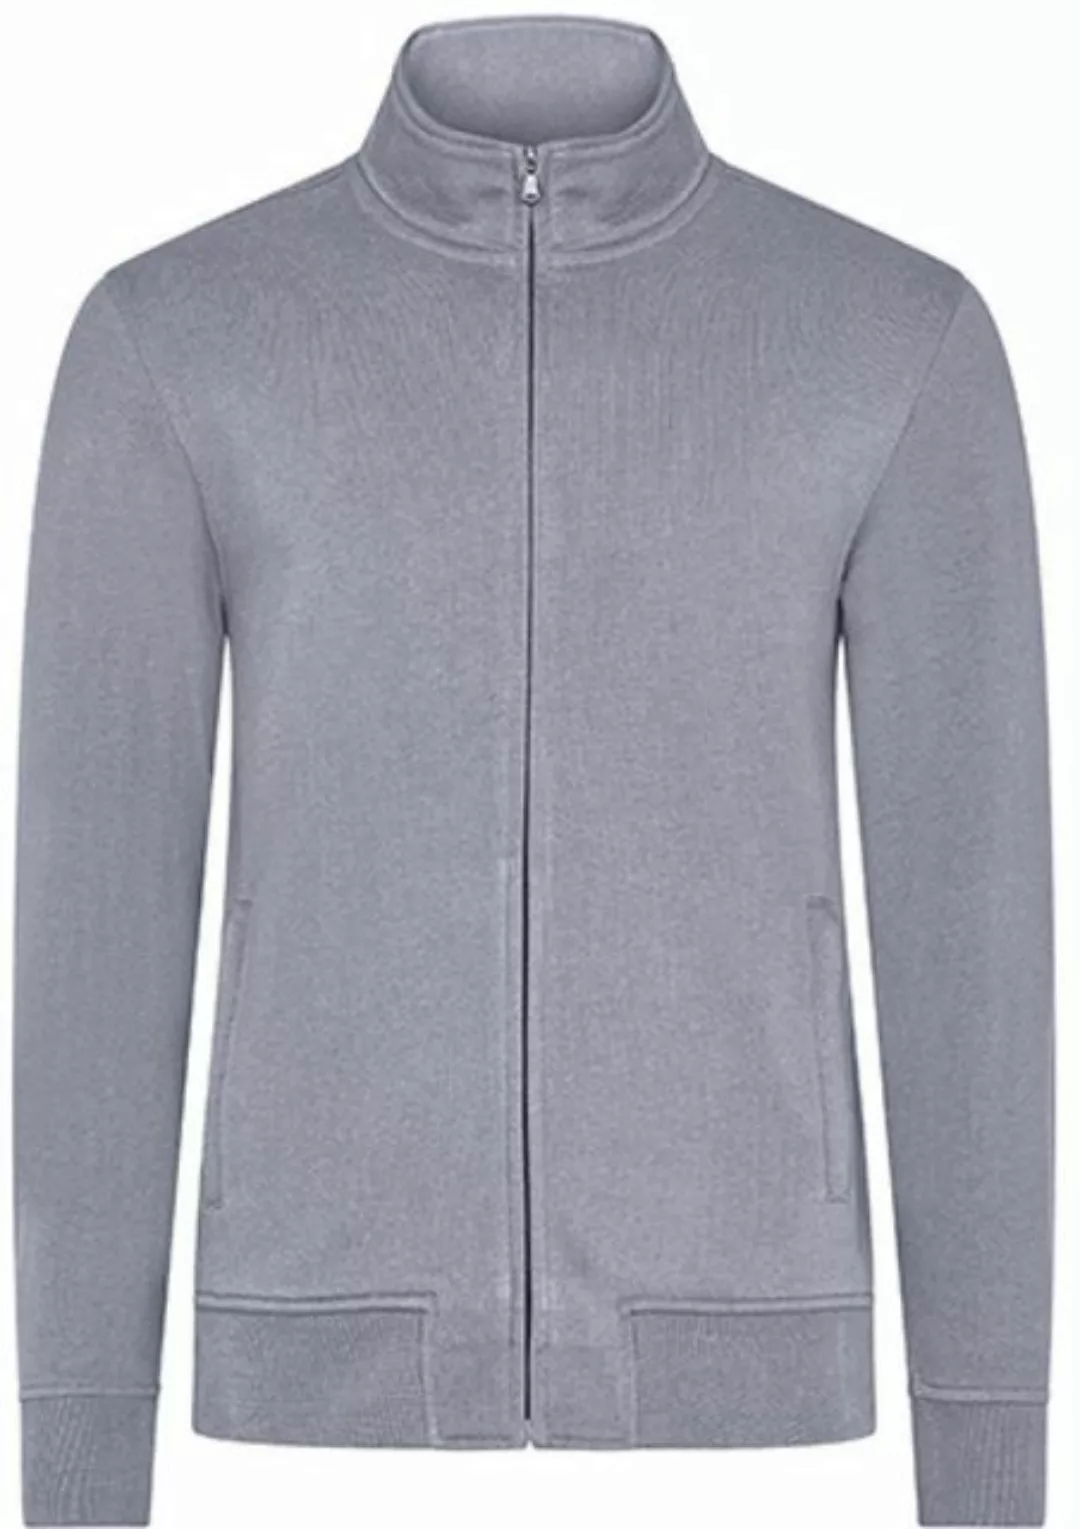 HRM Sweatjacke Men´s Premium Full-Zip Sweat Jacket günstig online kaufen